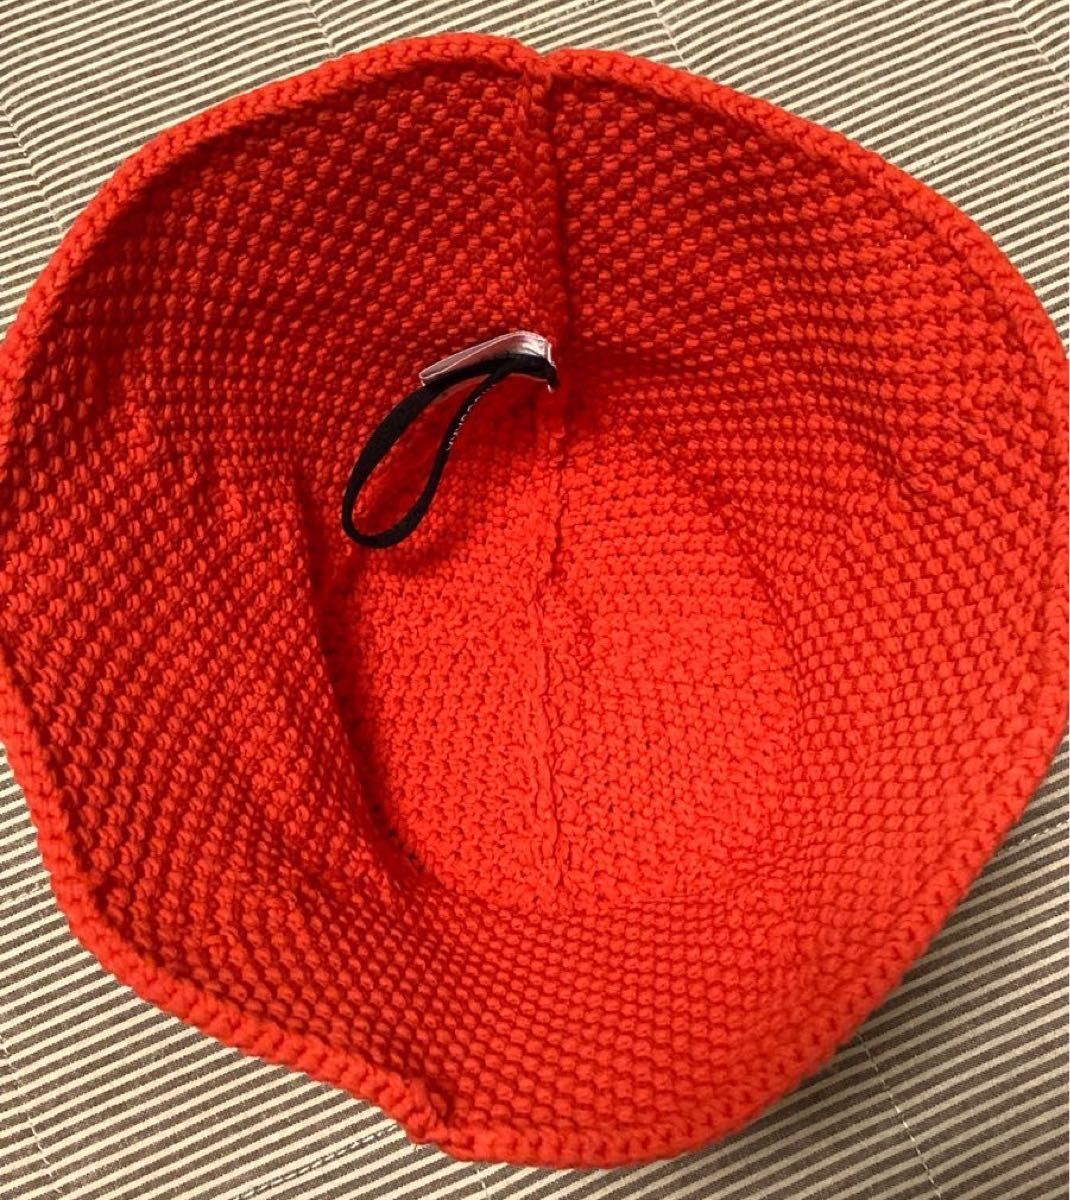 HICOSAKA　ヒコサカ　“Machine knit hat” オレンジ　11,000円　ユニセックス